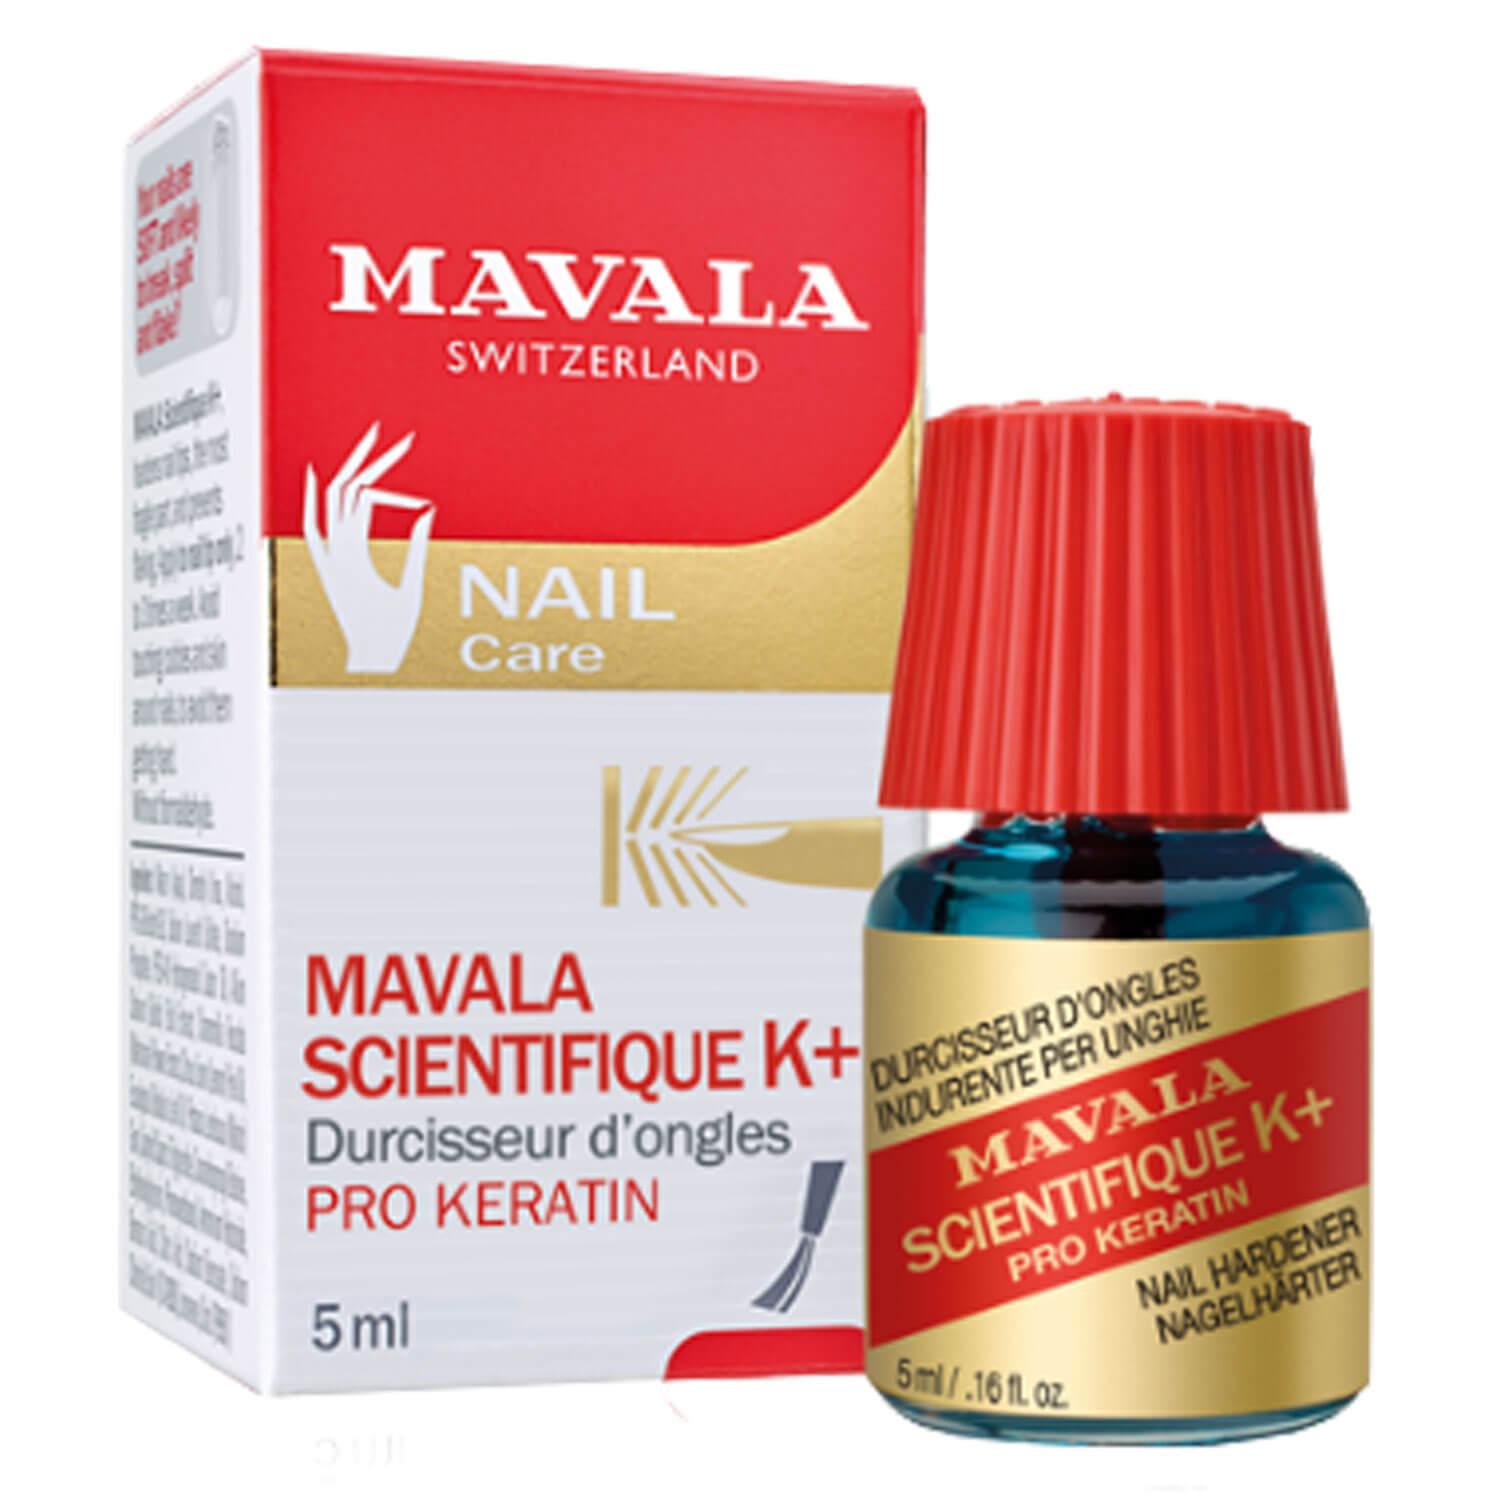 MAVALA Care - Scientifique nail hardener K+